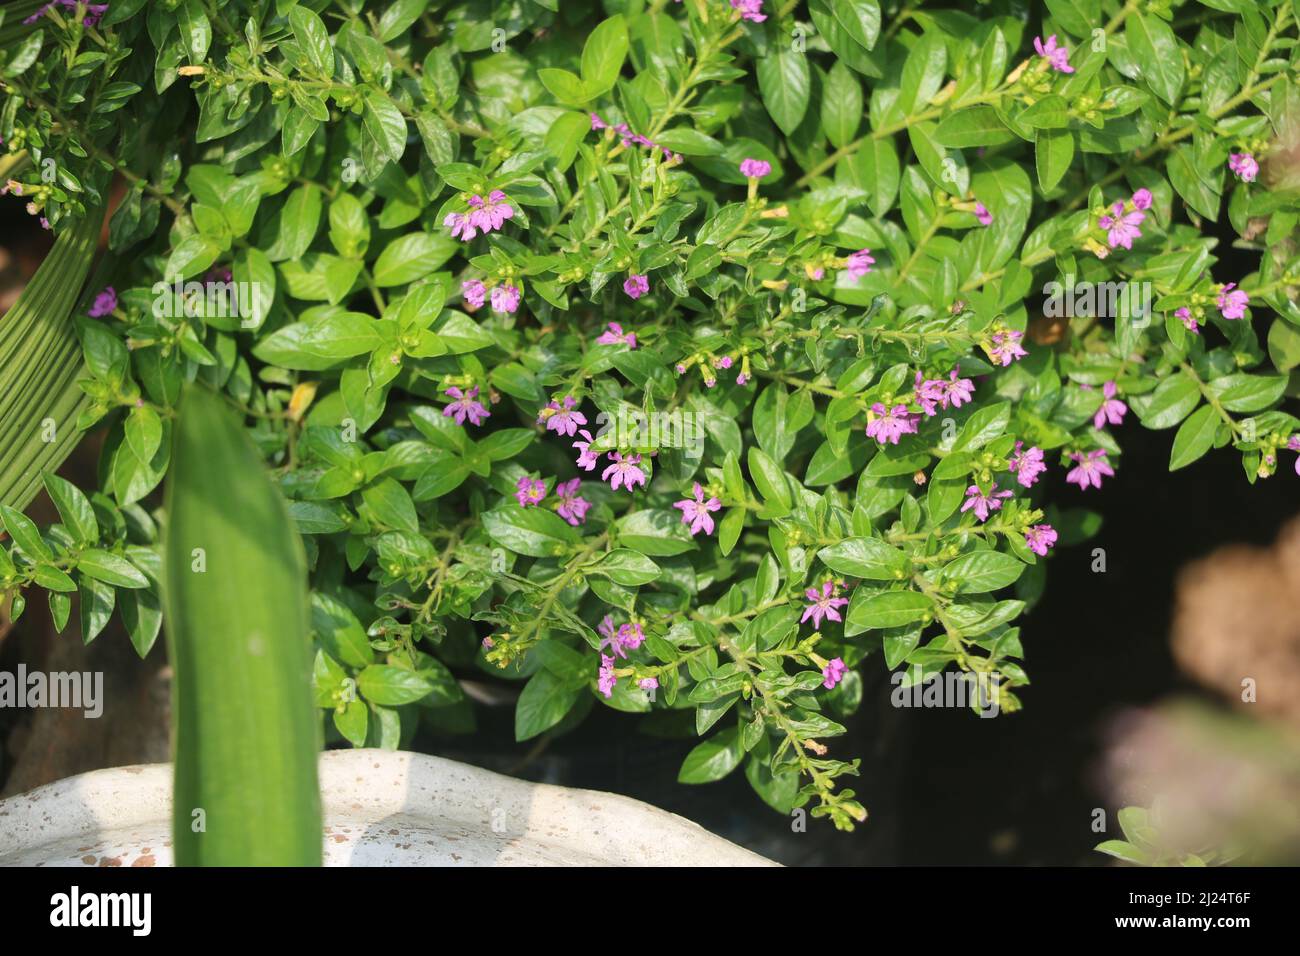 Piccolo fiore rosa, è bella pianta Panika di colore viola. Questa piccola pianta sembra altime come acqua.il suo fiore è molto piccolo e attraente. Foto Stock